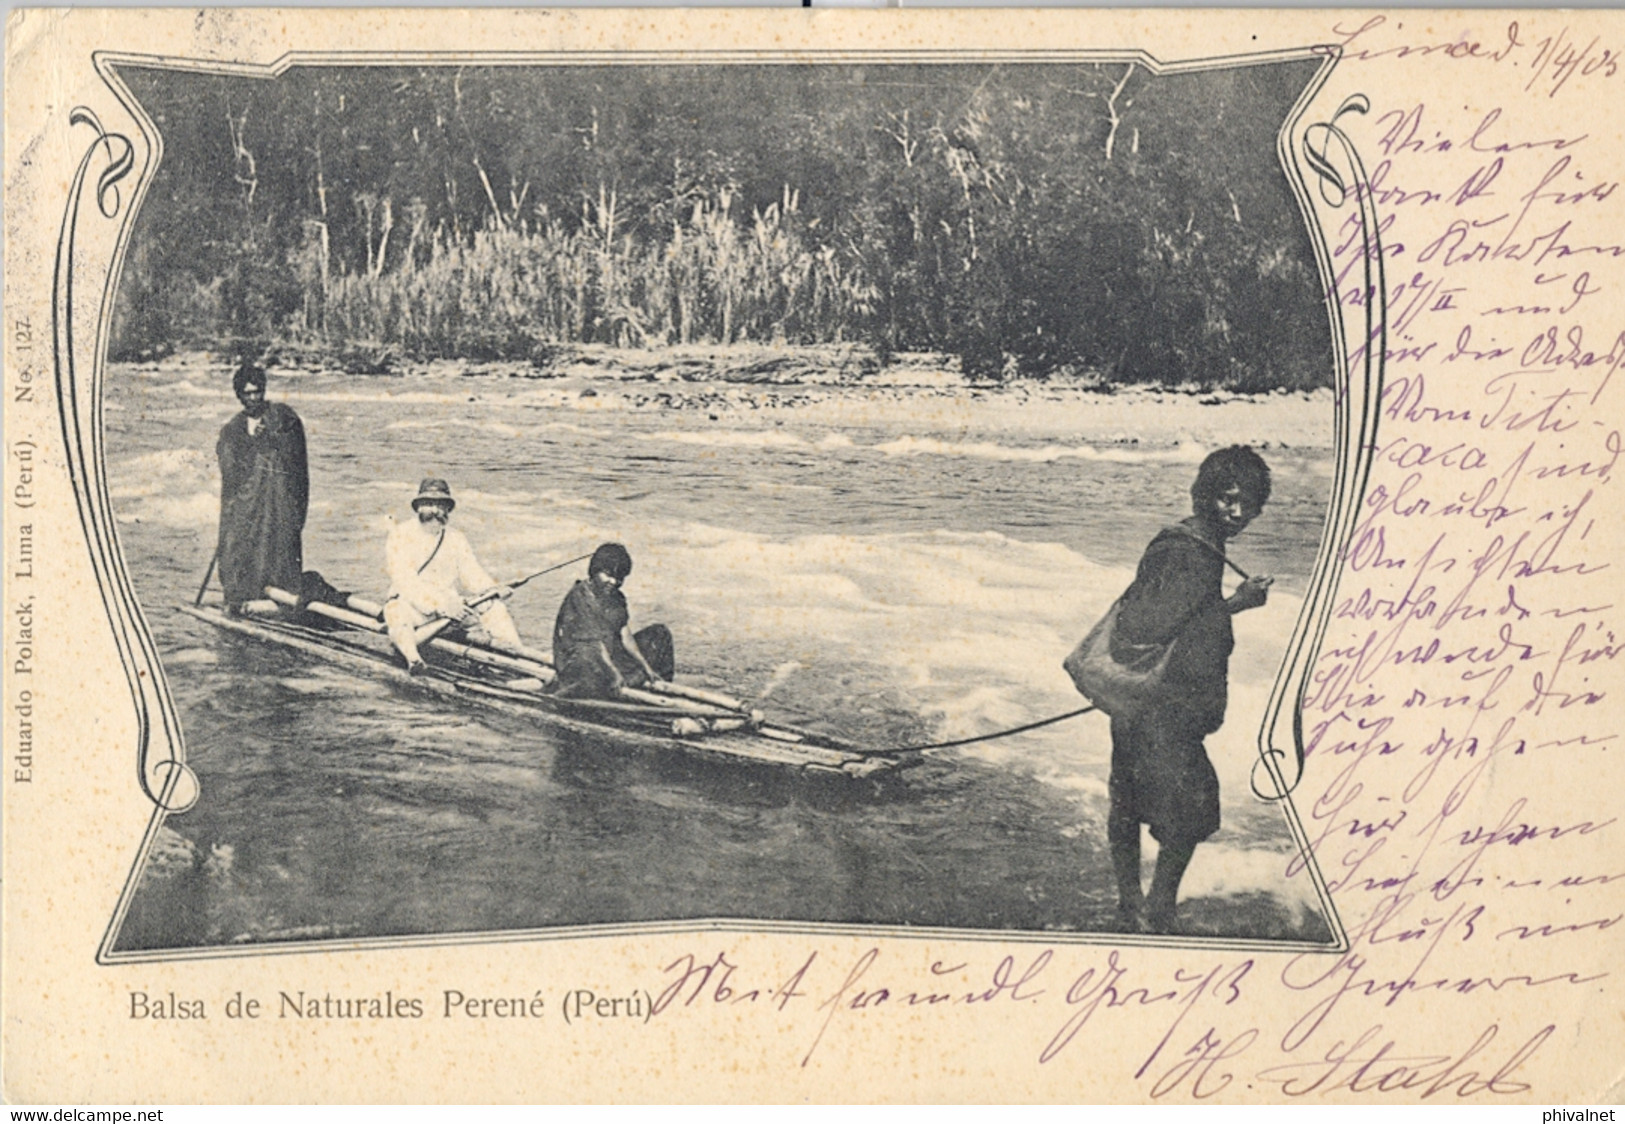 1905 PERÚ , T.P. CIRCULADA , LIMA - BERLIN , LLEGADA , BALSA DE NATURALES PERENÉ - Peru